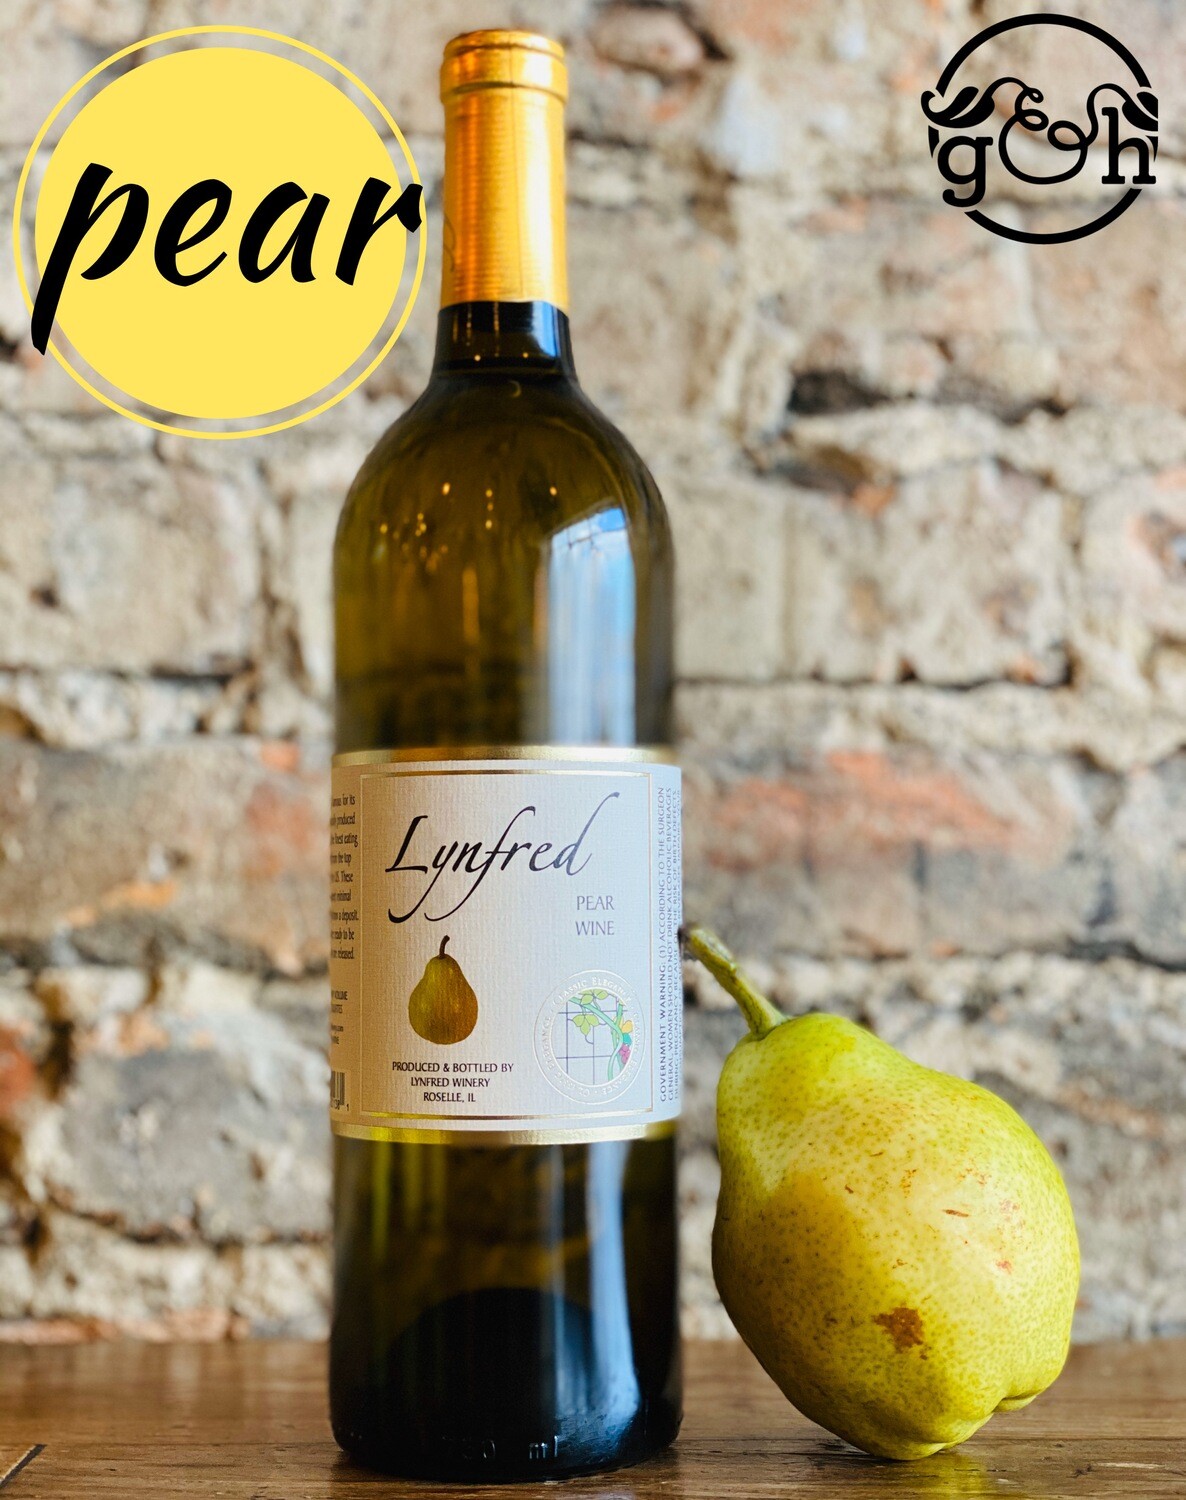 Lynfred Winery Pear-Bottle